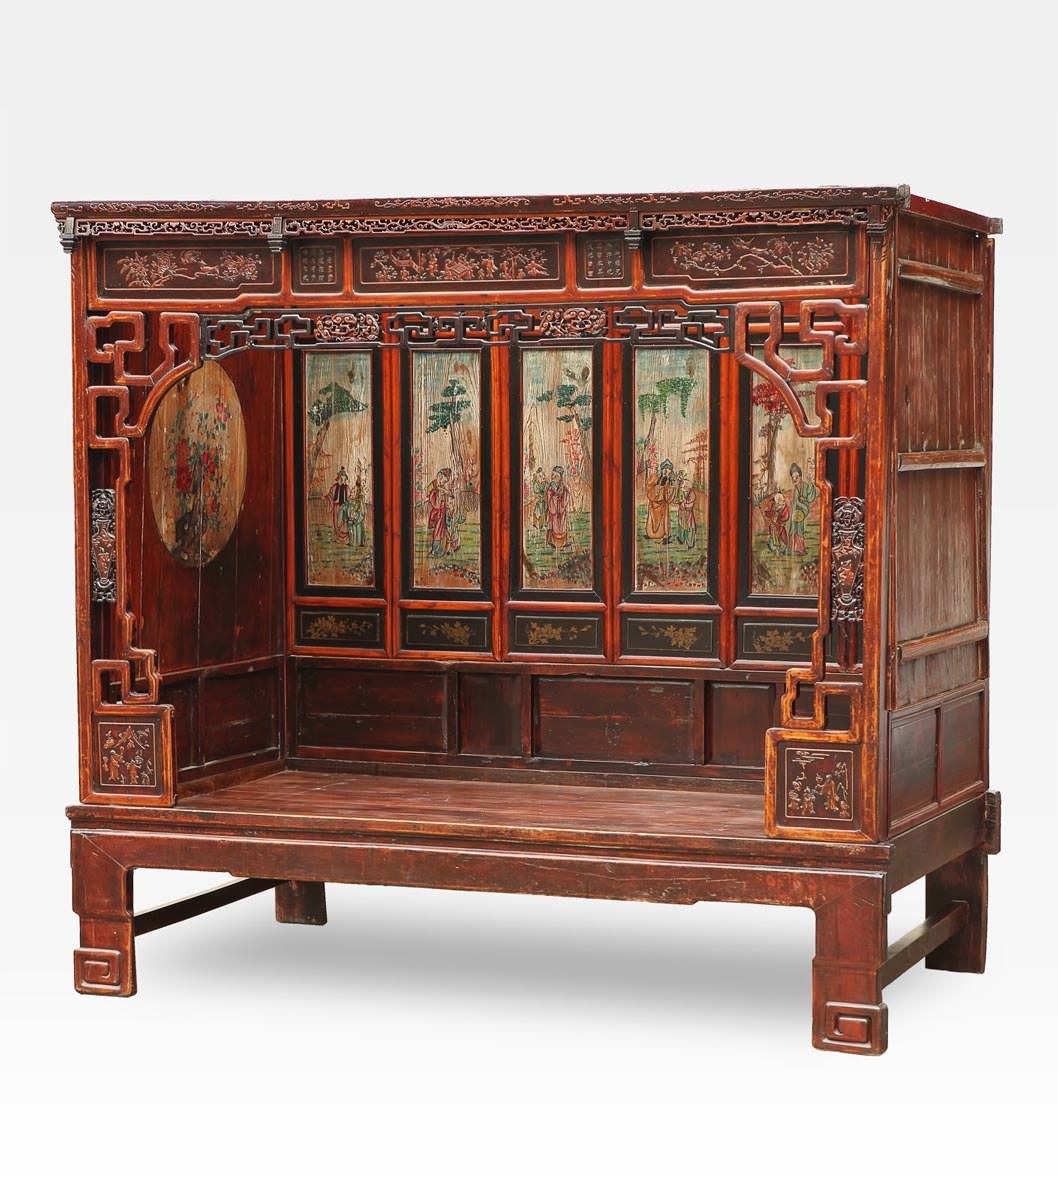 Китайская мебель купить. Мебель в китайском стиле. Старинная китайская мебель. Мебель древнего Китая. Антикварная мебель в китайском стиле.